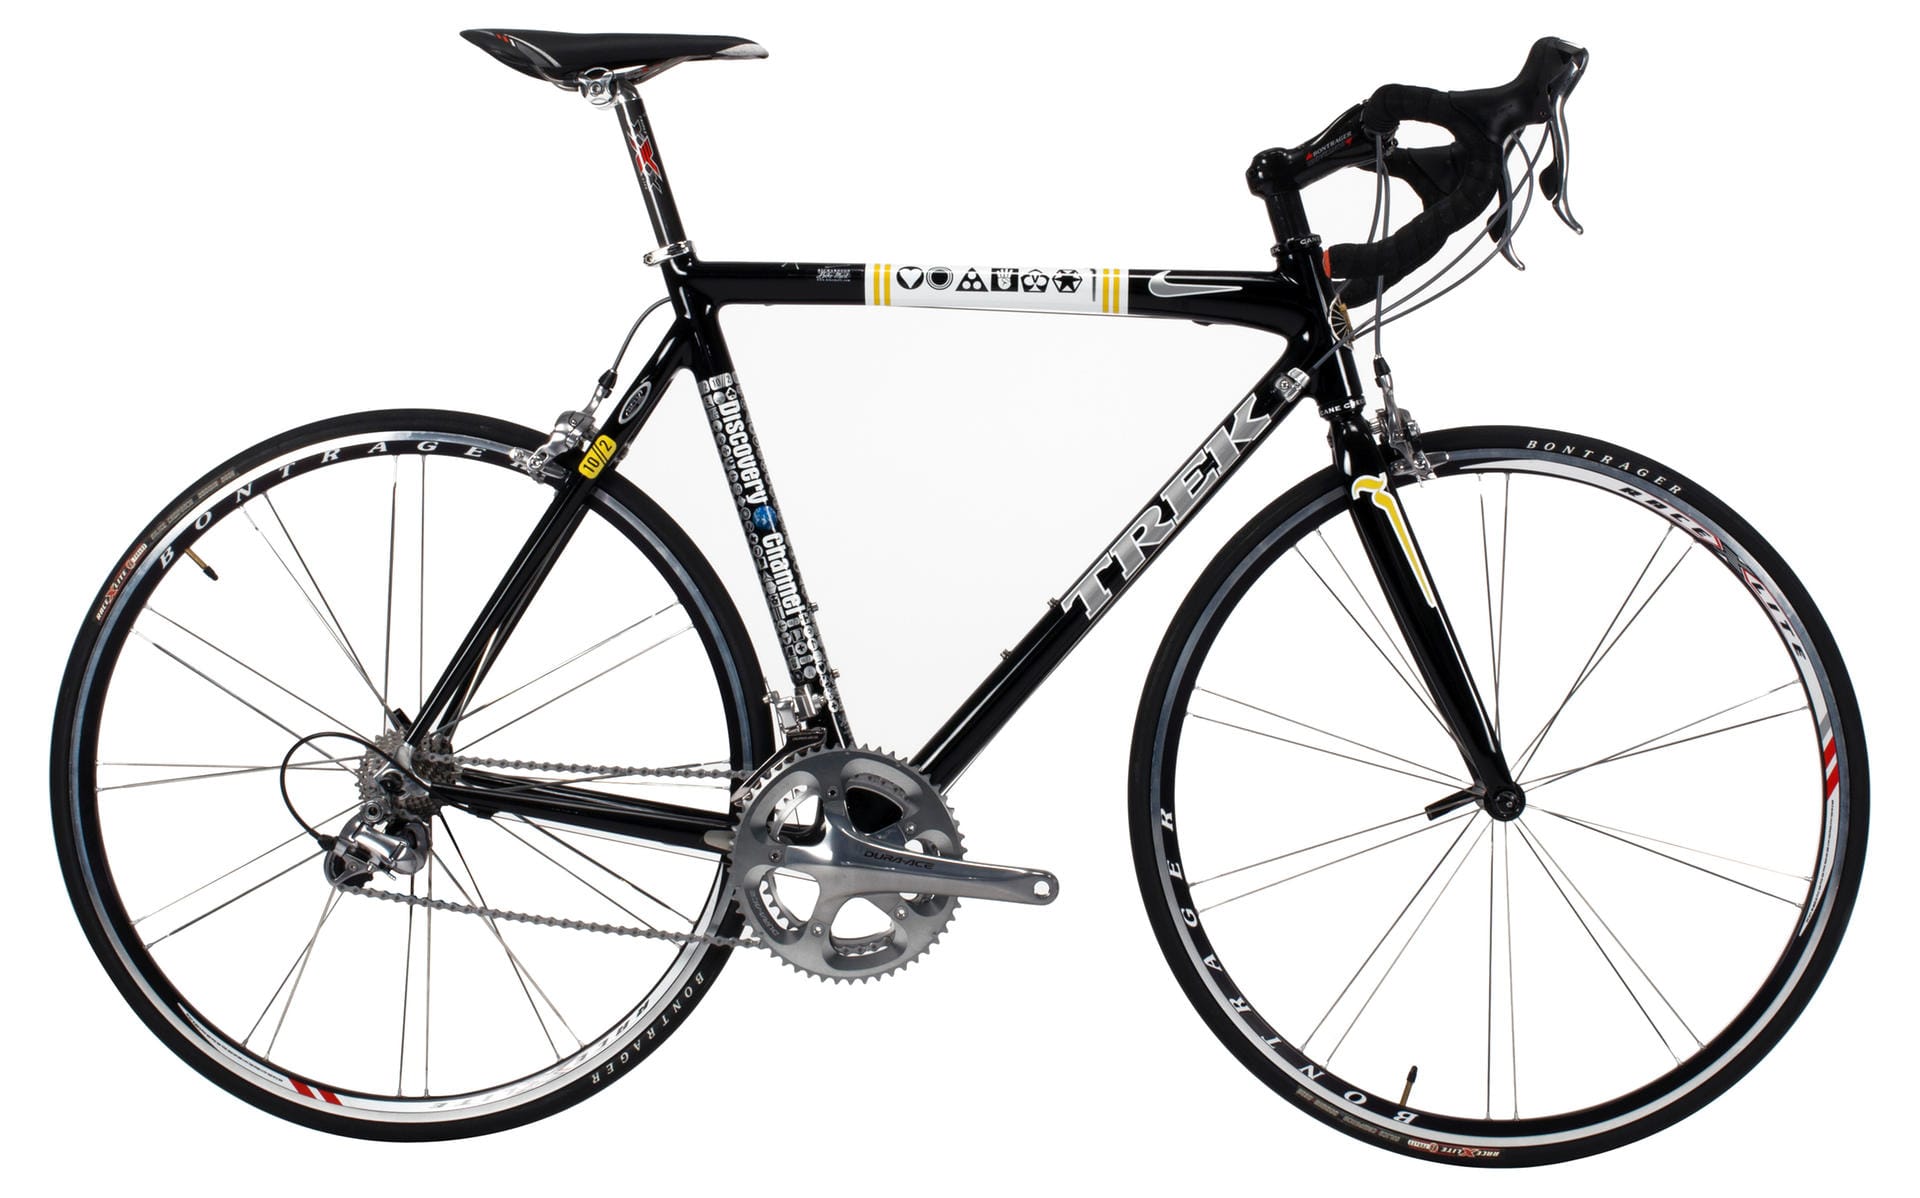 Dieses Bike ist eine Replika des Fahrrads mit der Lance Armstrong einst seinen siebten Tour-de-France-Sieg einfuhr. Das aktuelle Gebot liegt bei 10.000 US-Dollar.